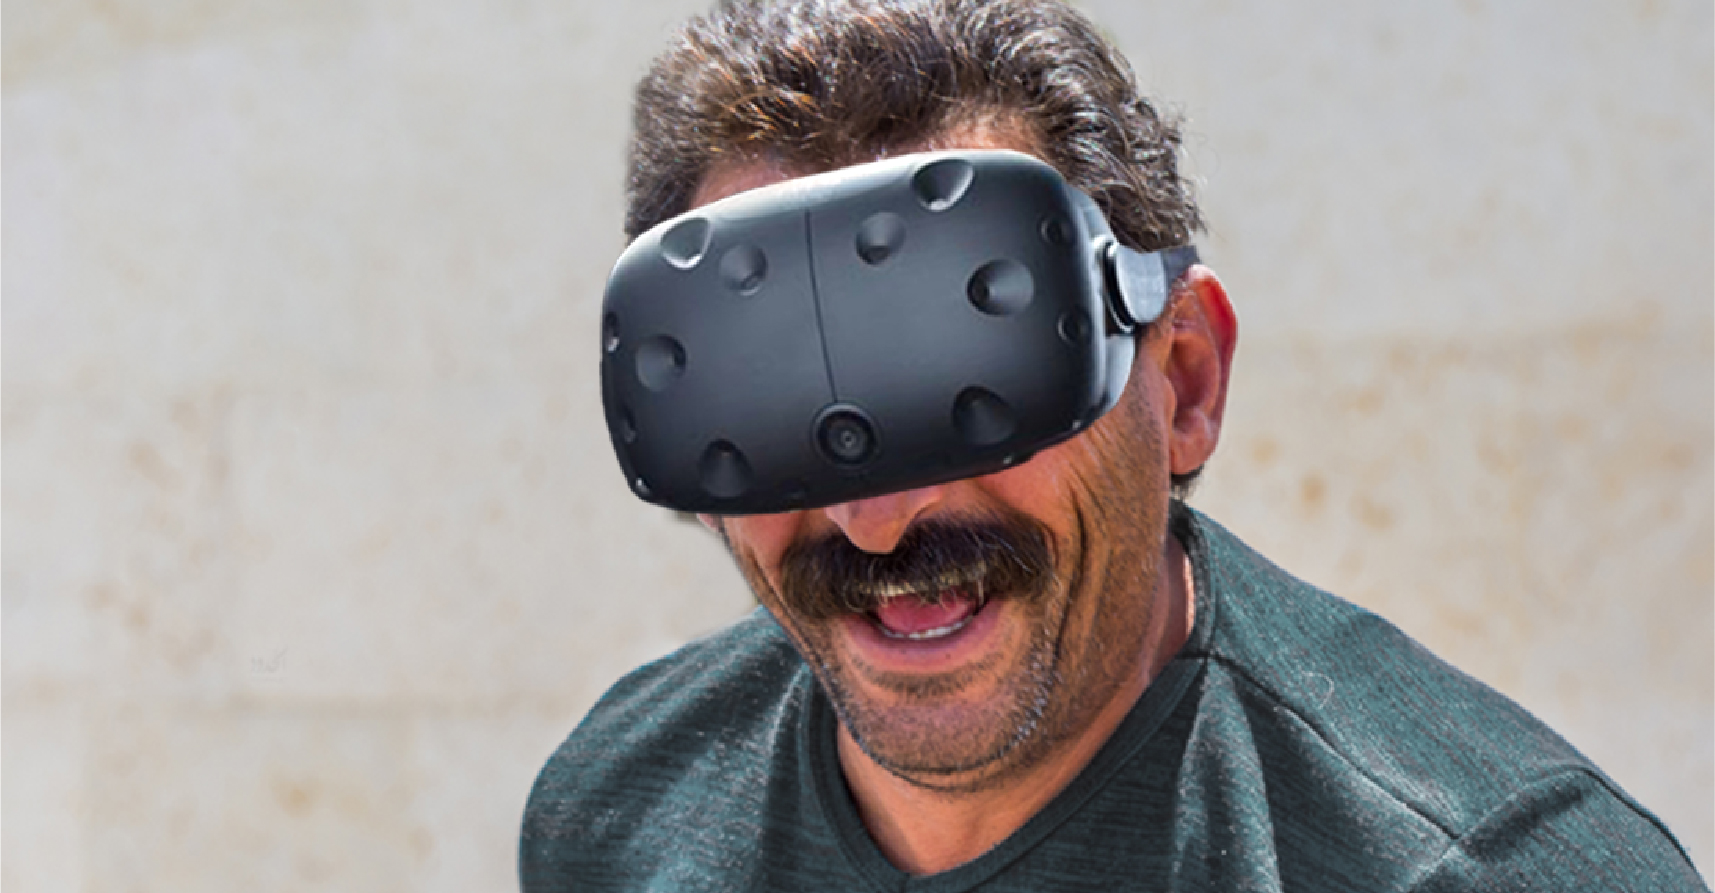 صورة الحكومة تدعم تطوير ونشر نظارات الواقع الافتراضي ليتمكن المواطنون من معايشة ظروف أفضل